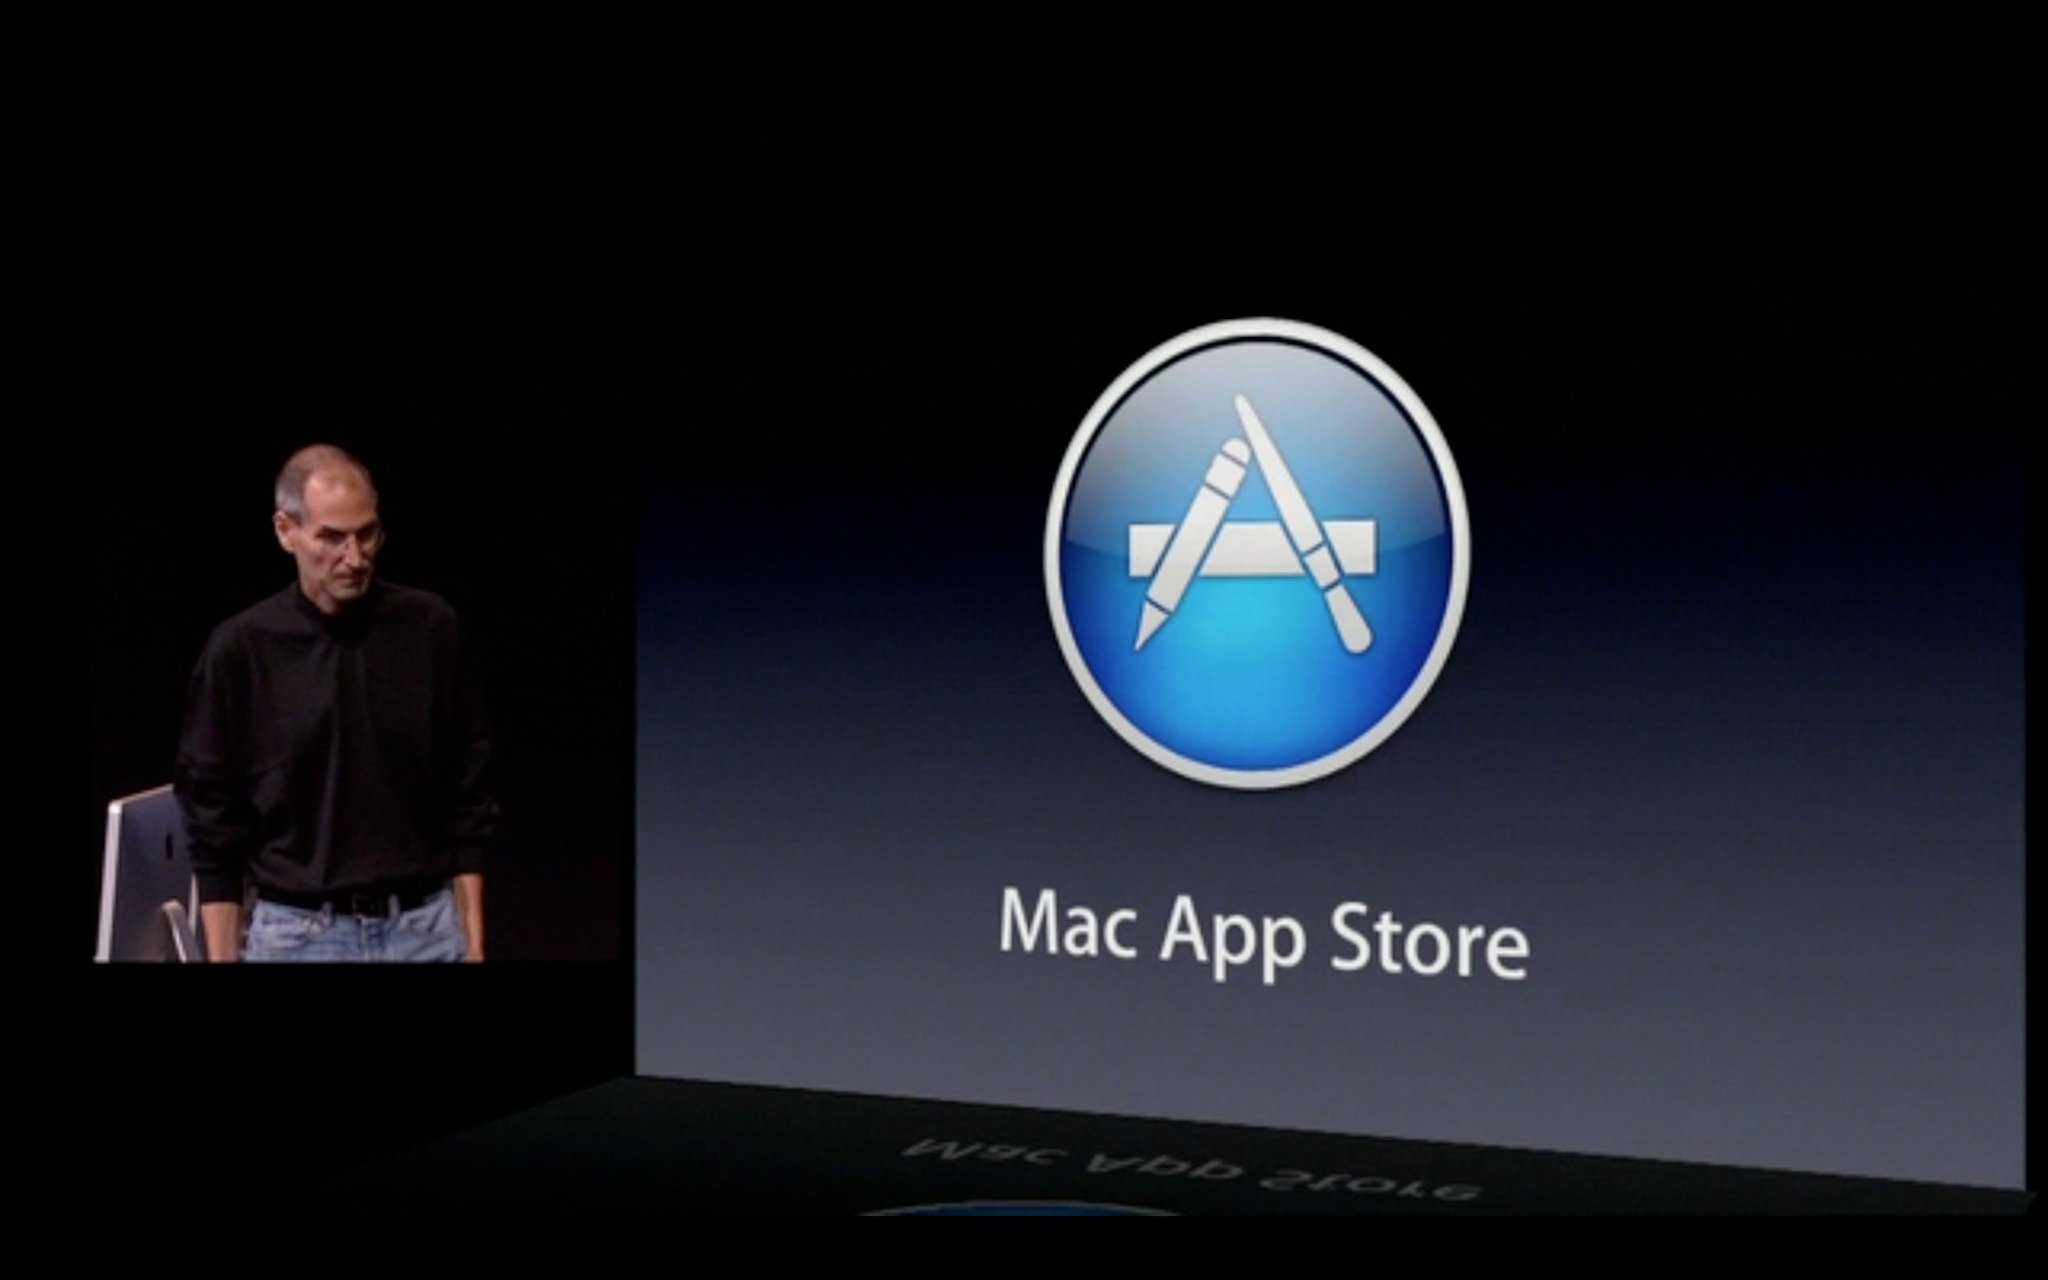 Mac App Store intro